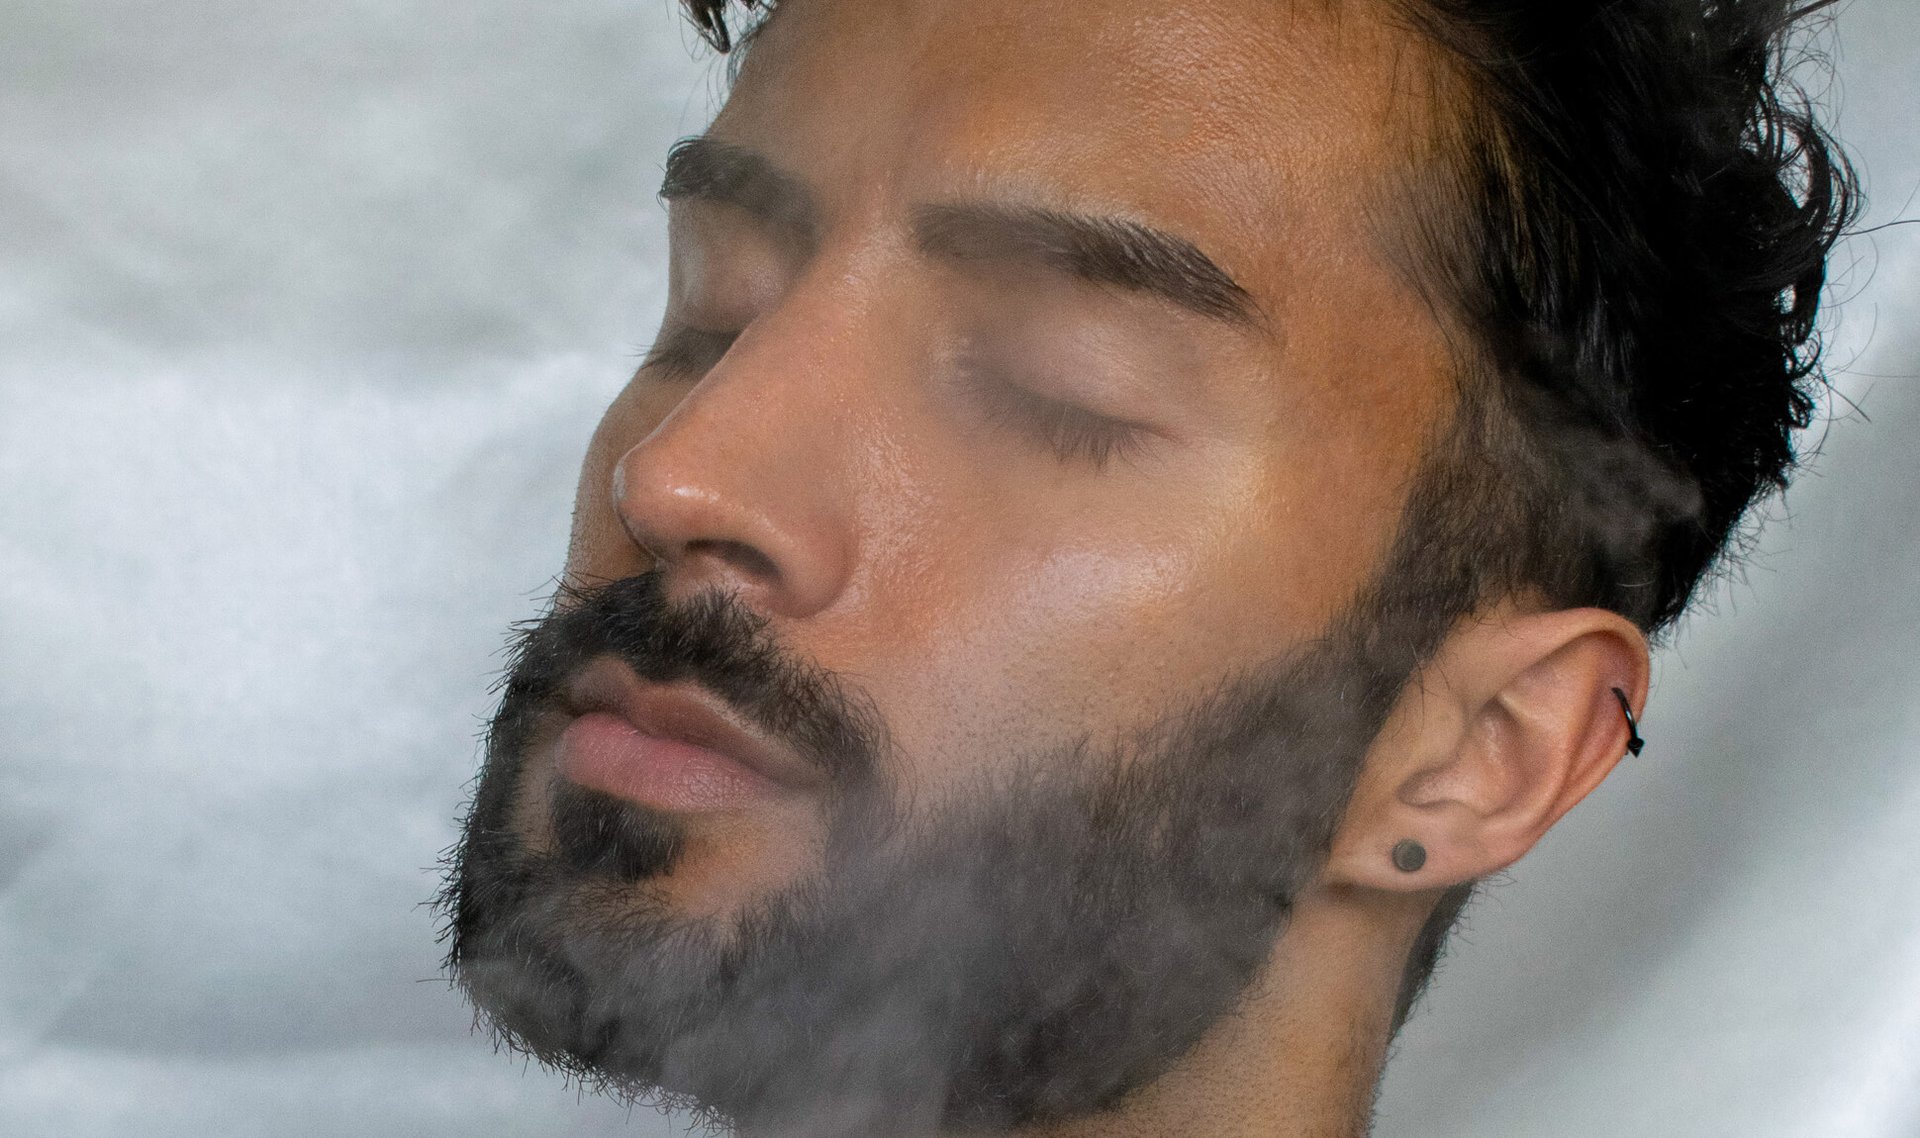 person receiving steam facial